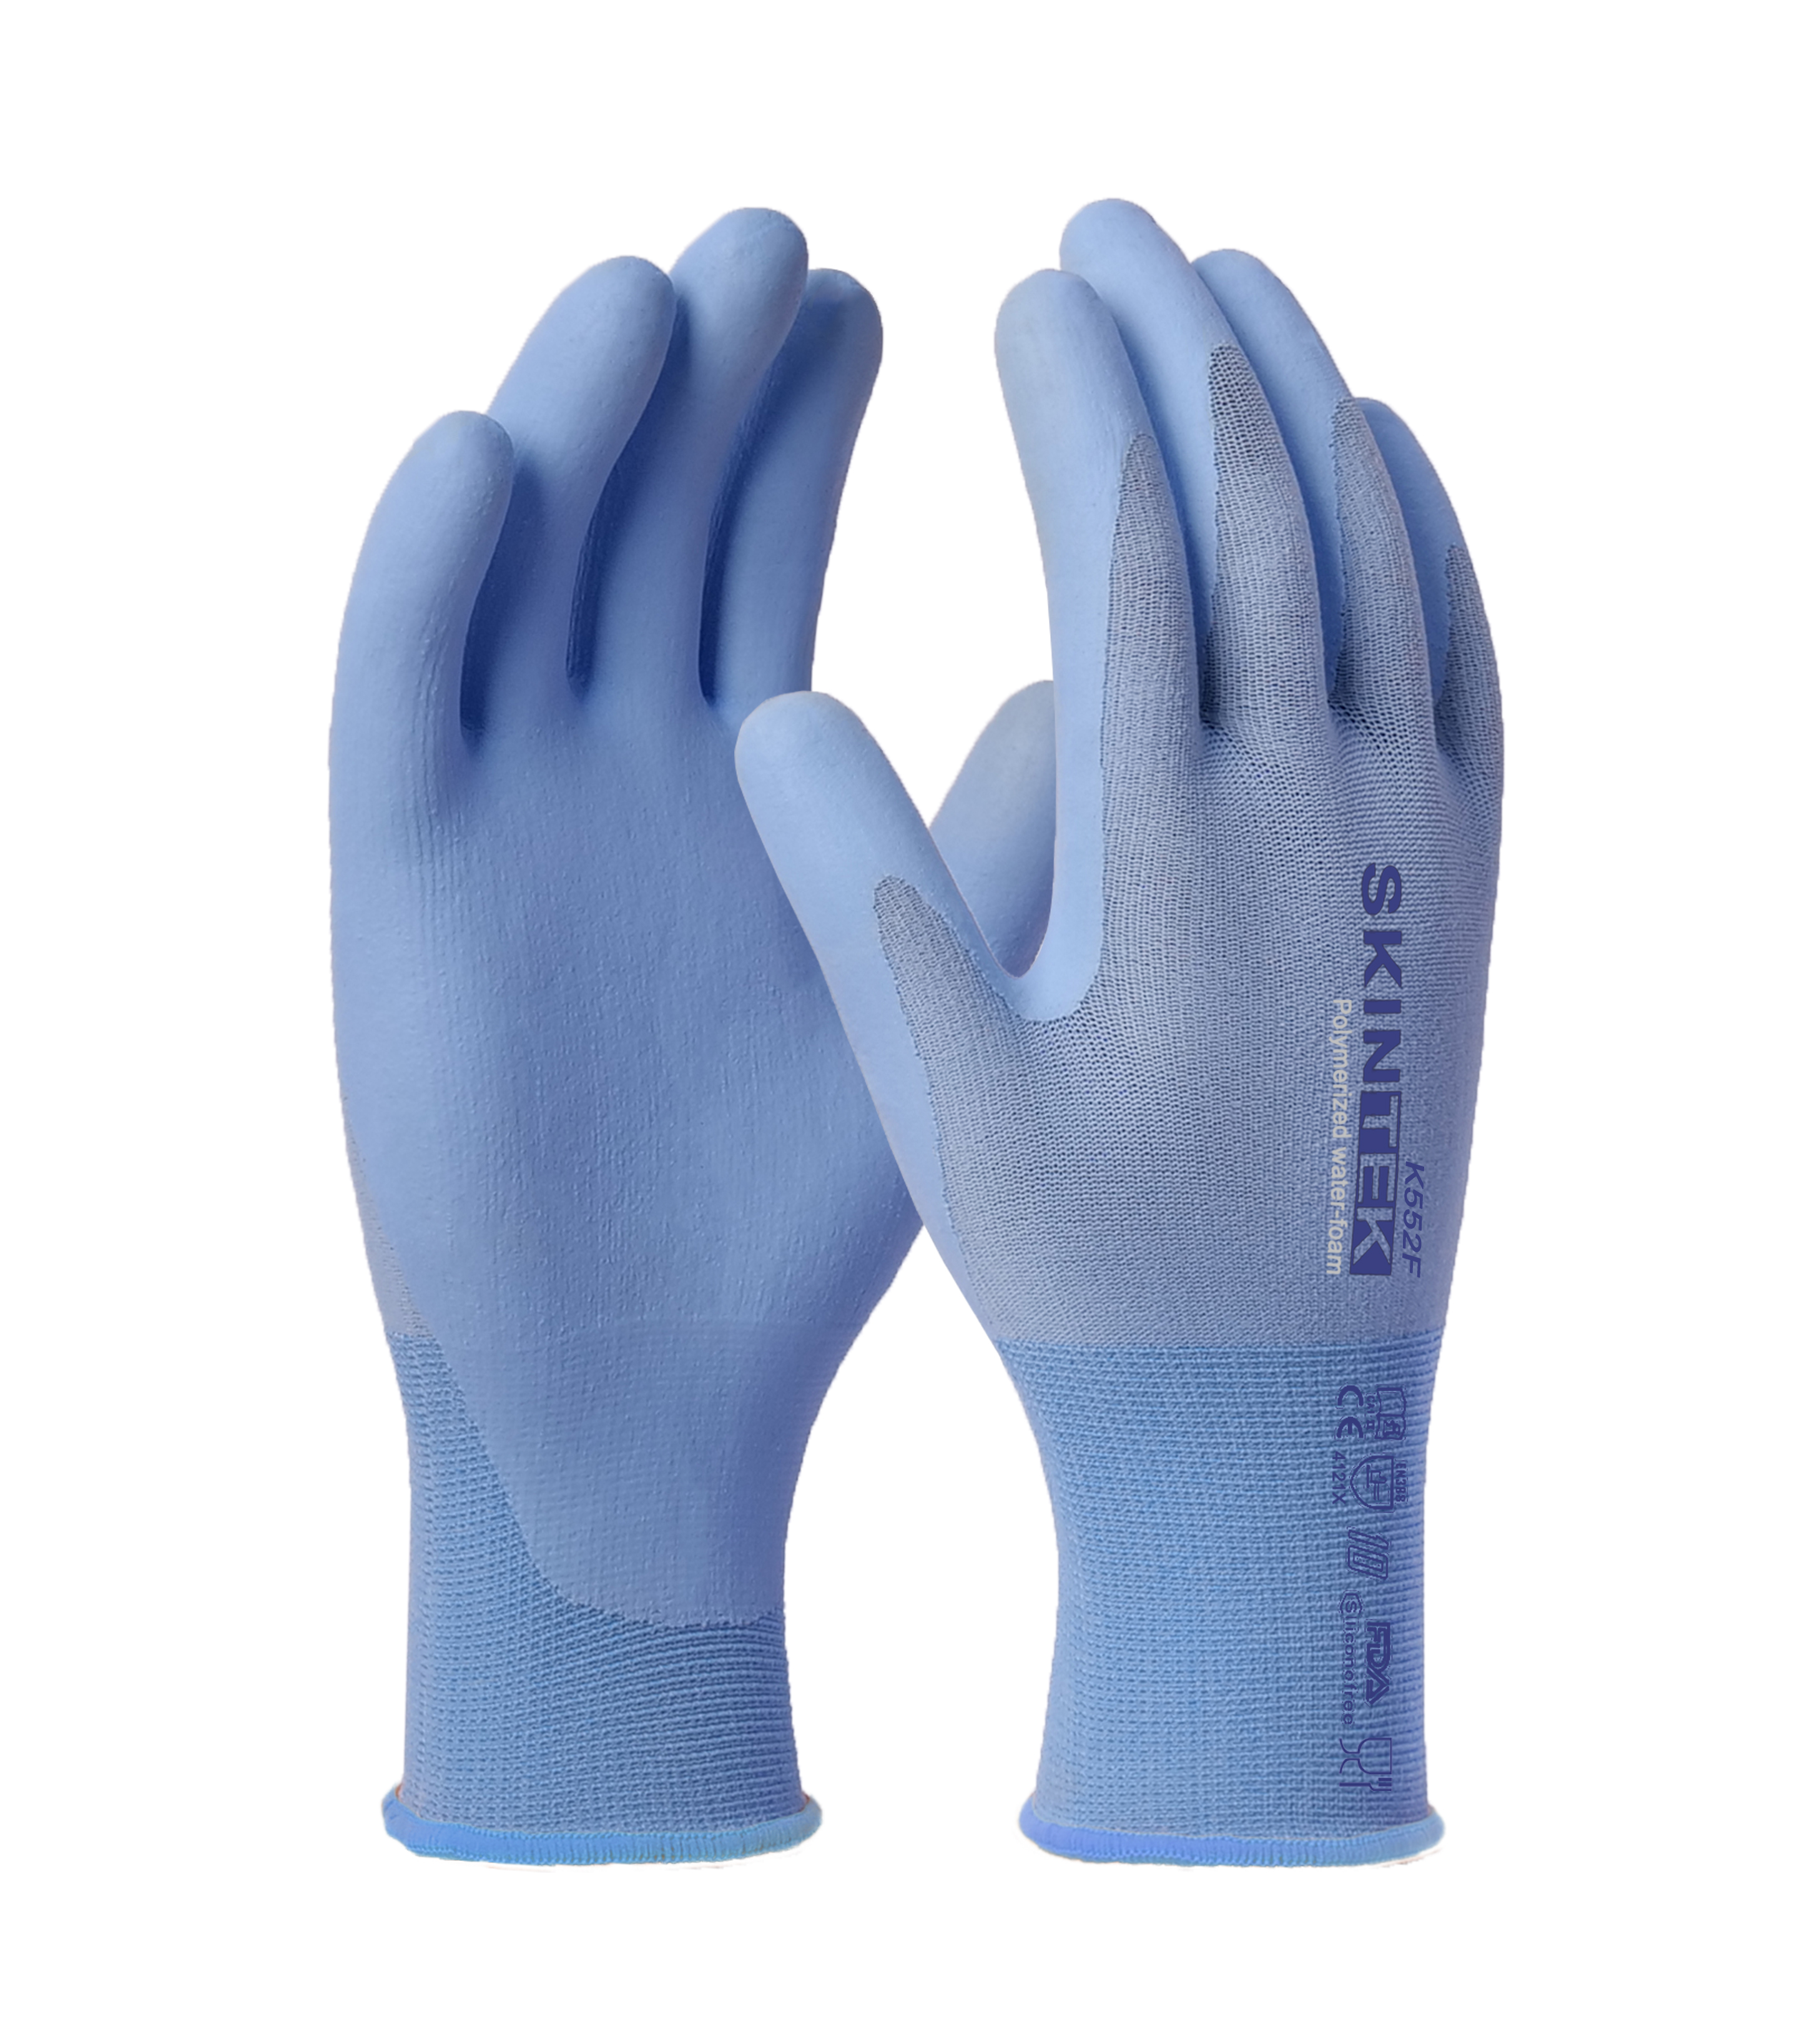 SKINTEK-K552F glove